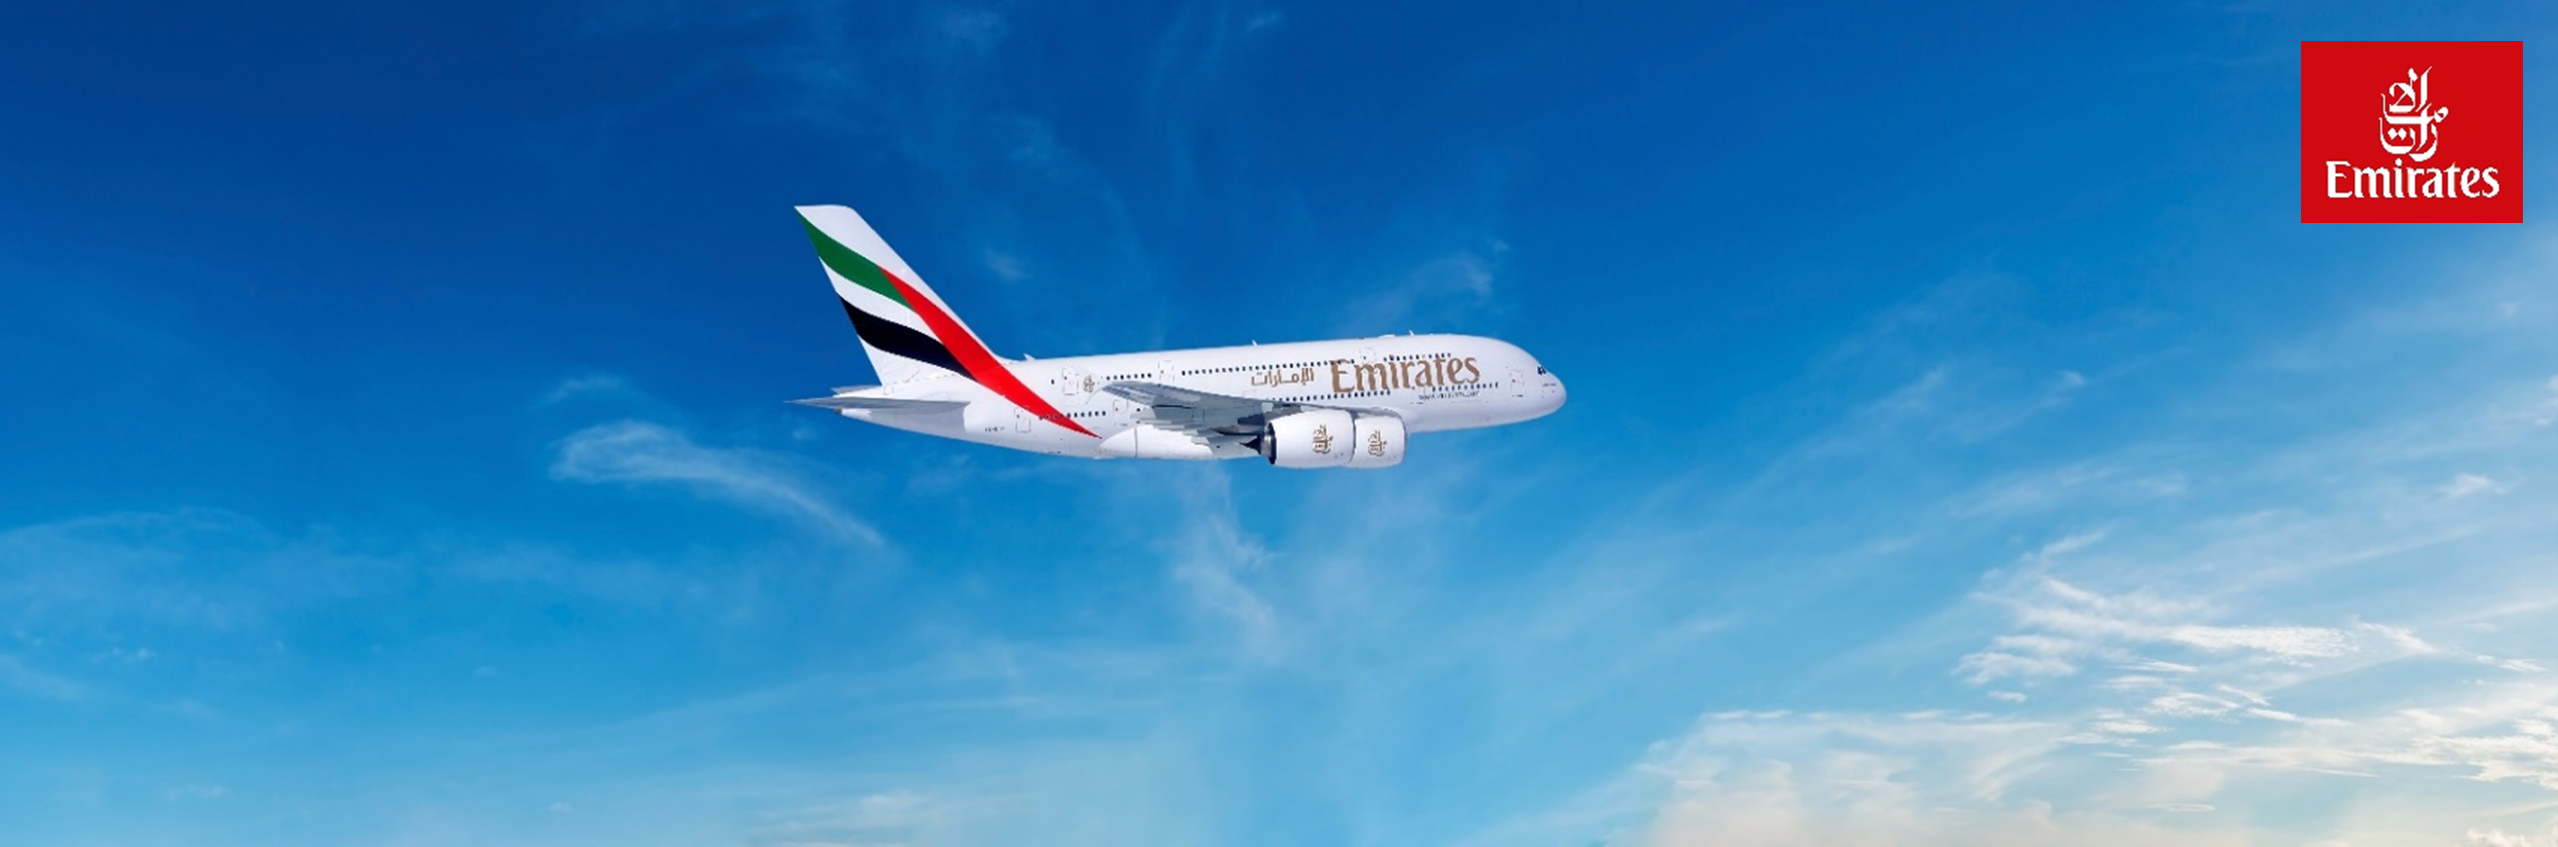 Emiratesbanner